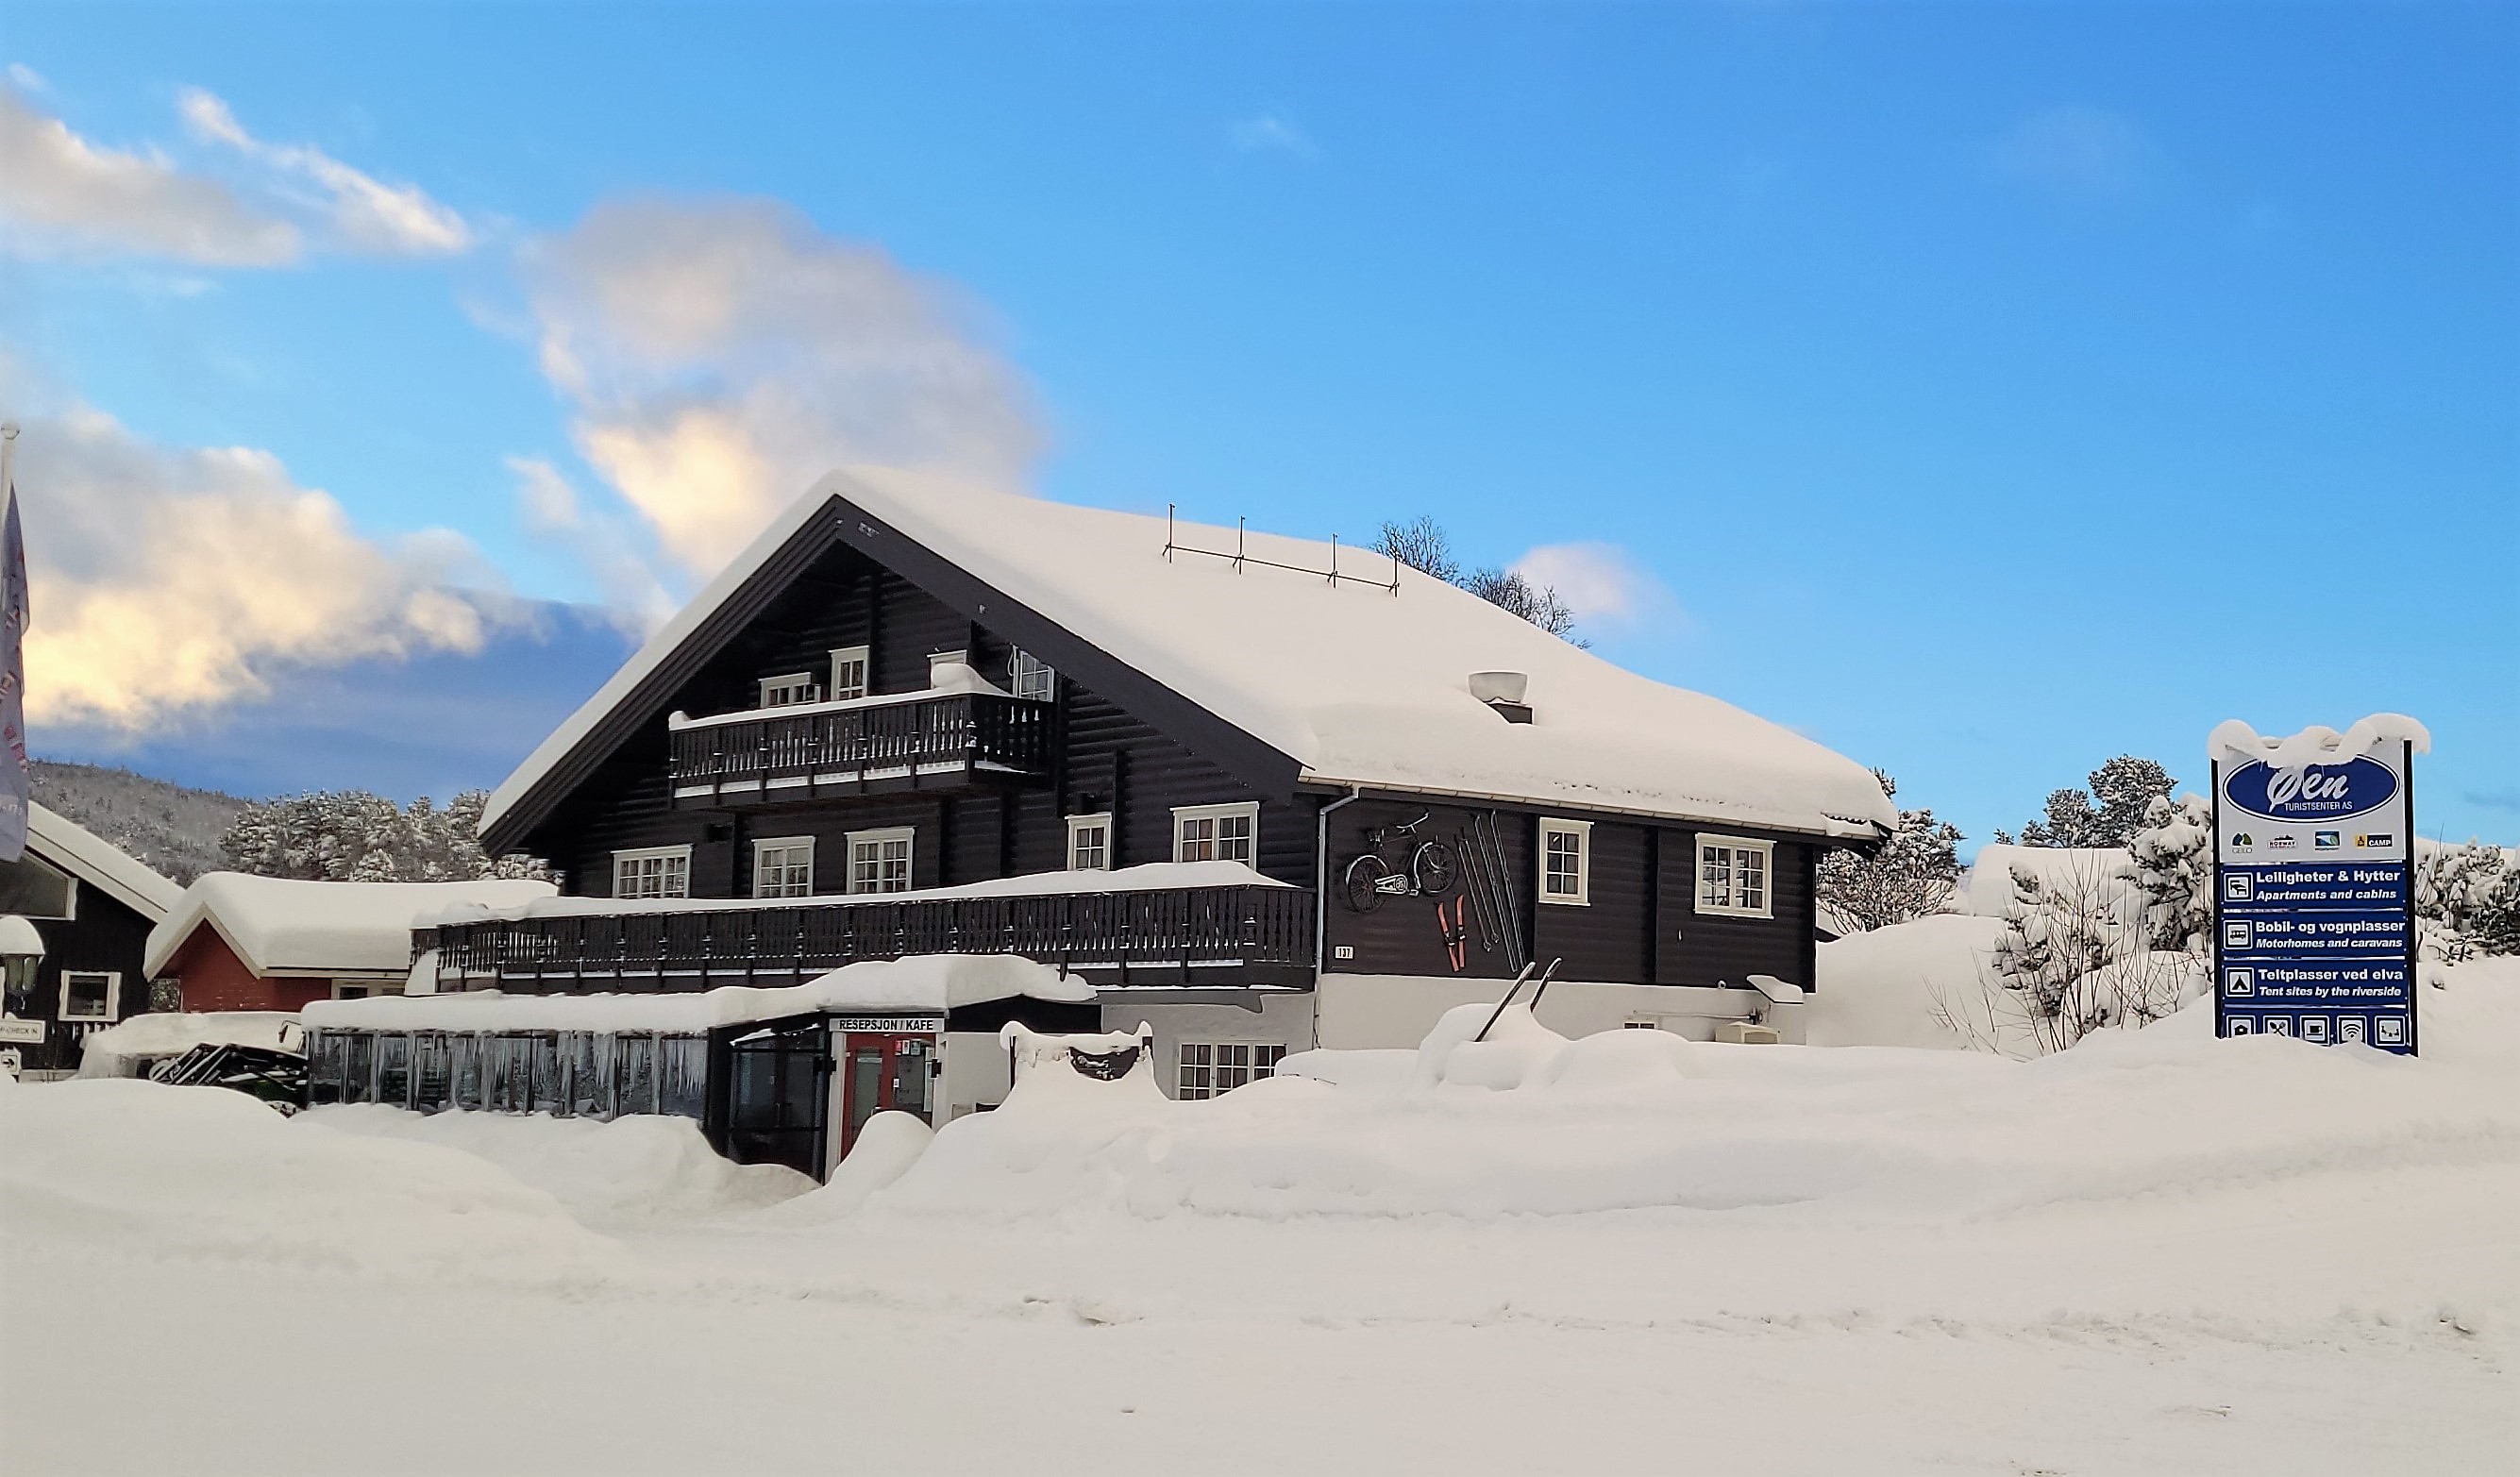 øen turistsenter geilo reception winter snow